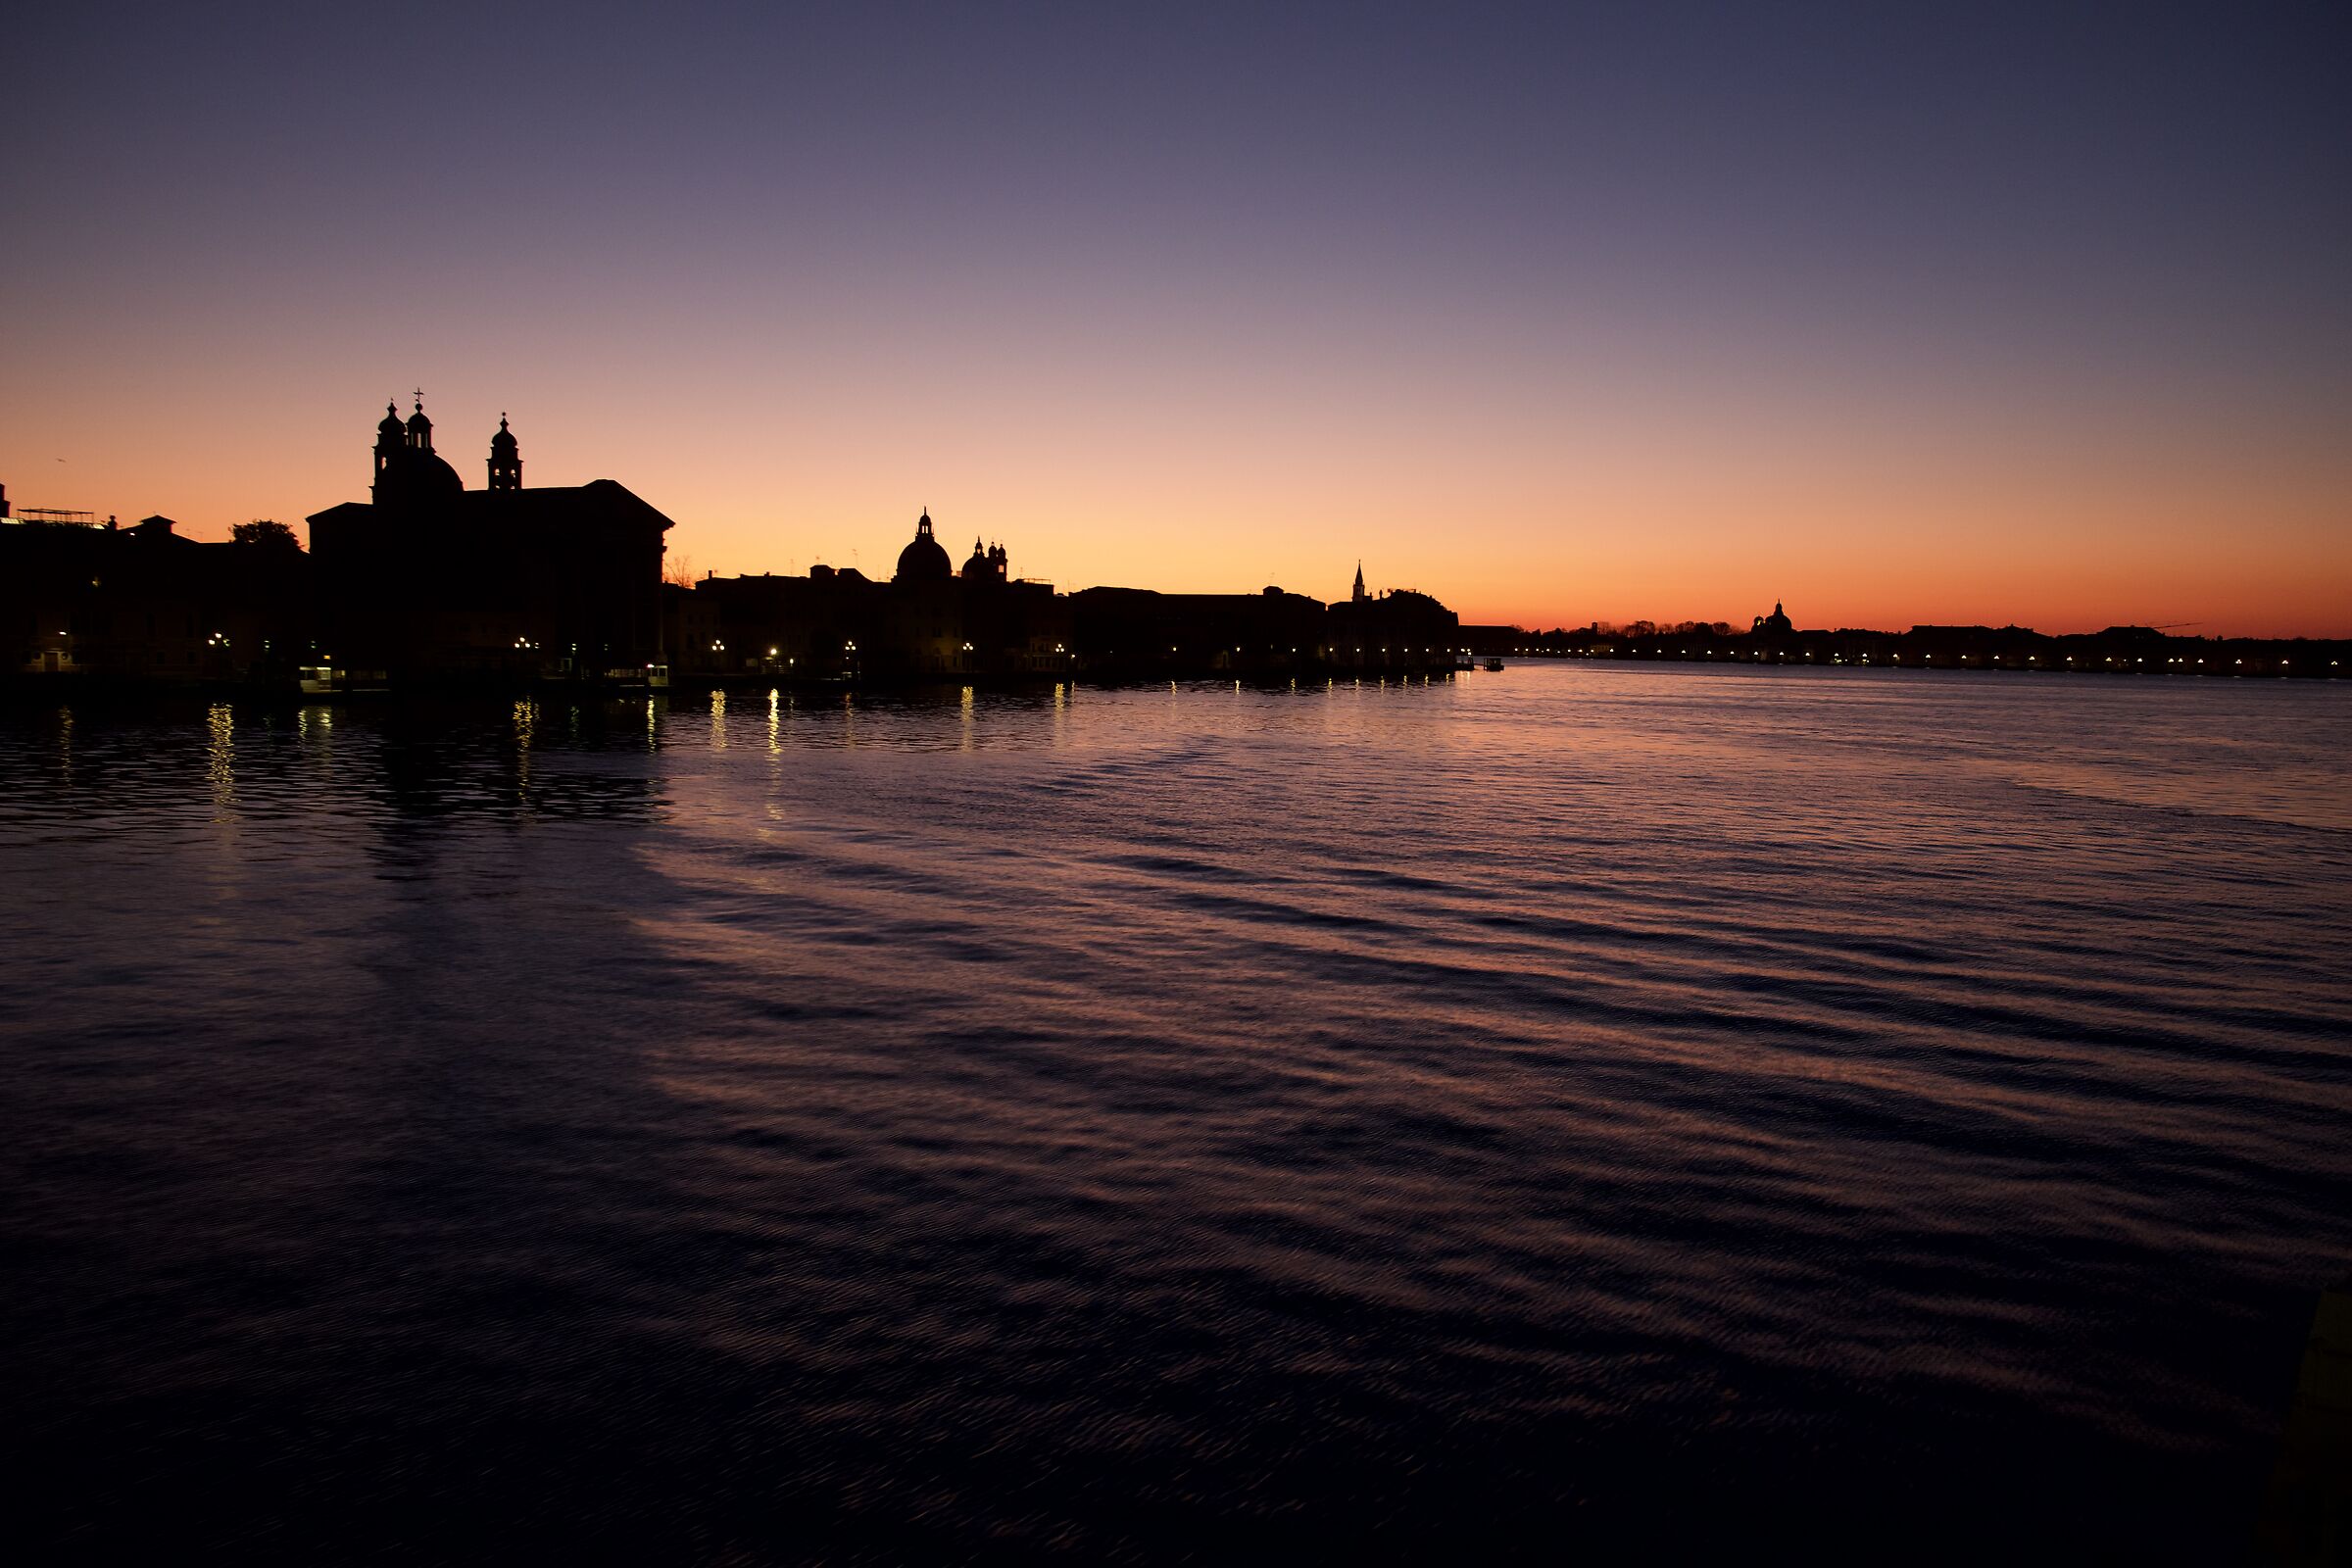 Venice in lockdown at dawn...